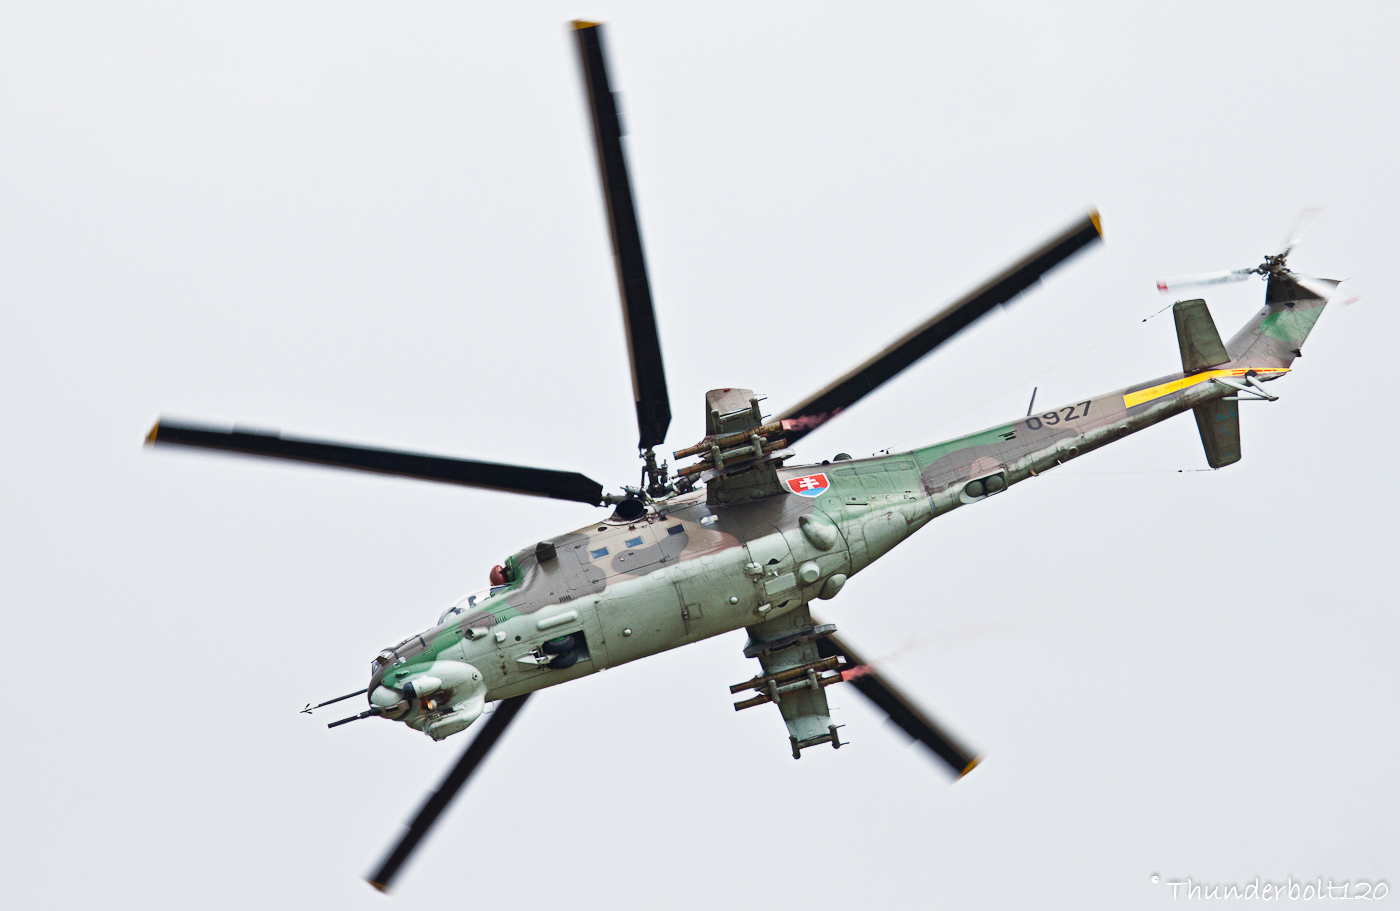 Mi-24V Hind 0927